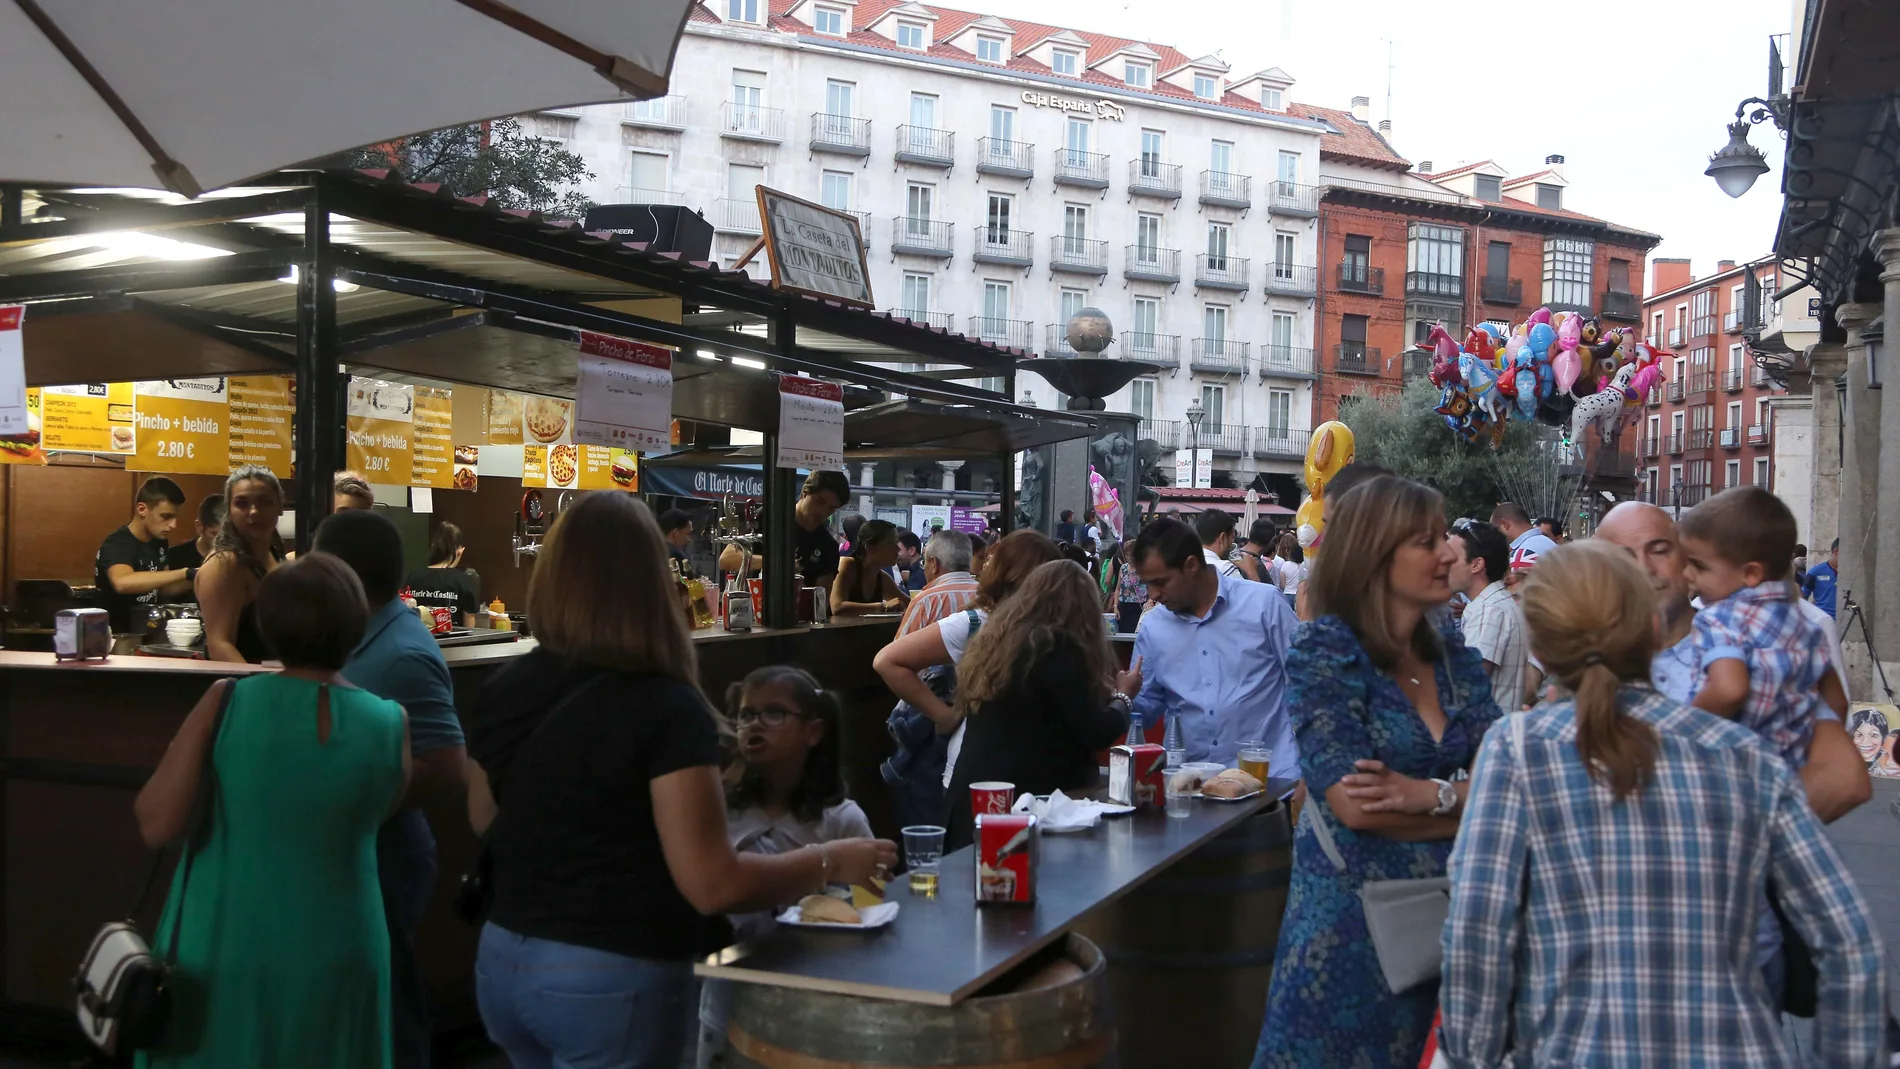 Feria de Día de las fiestas de Valladolid antes de la pandemia